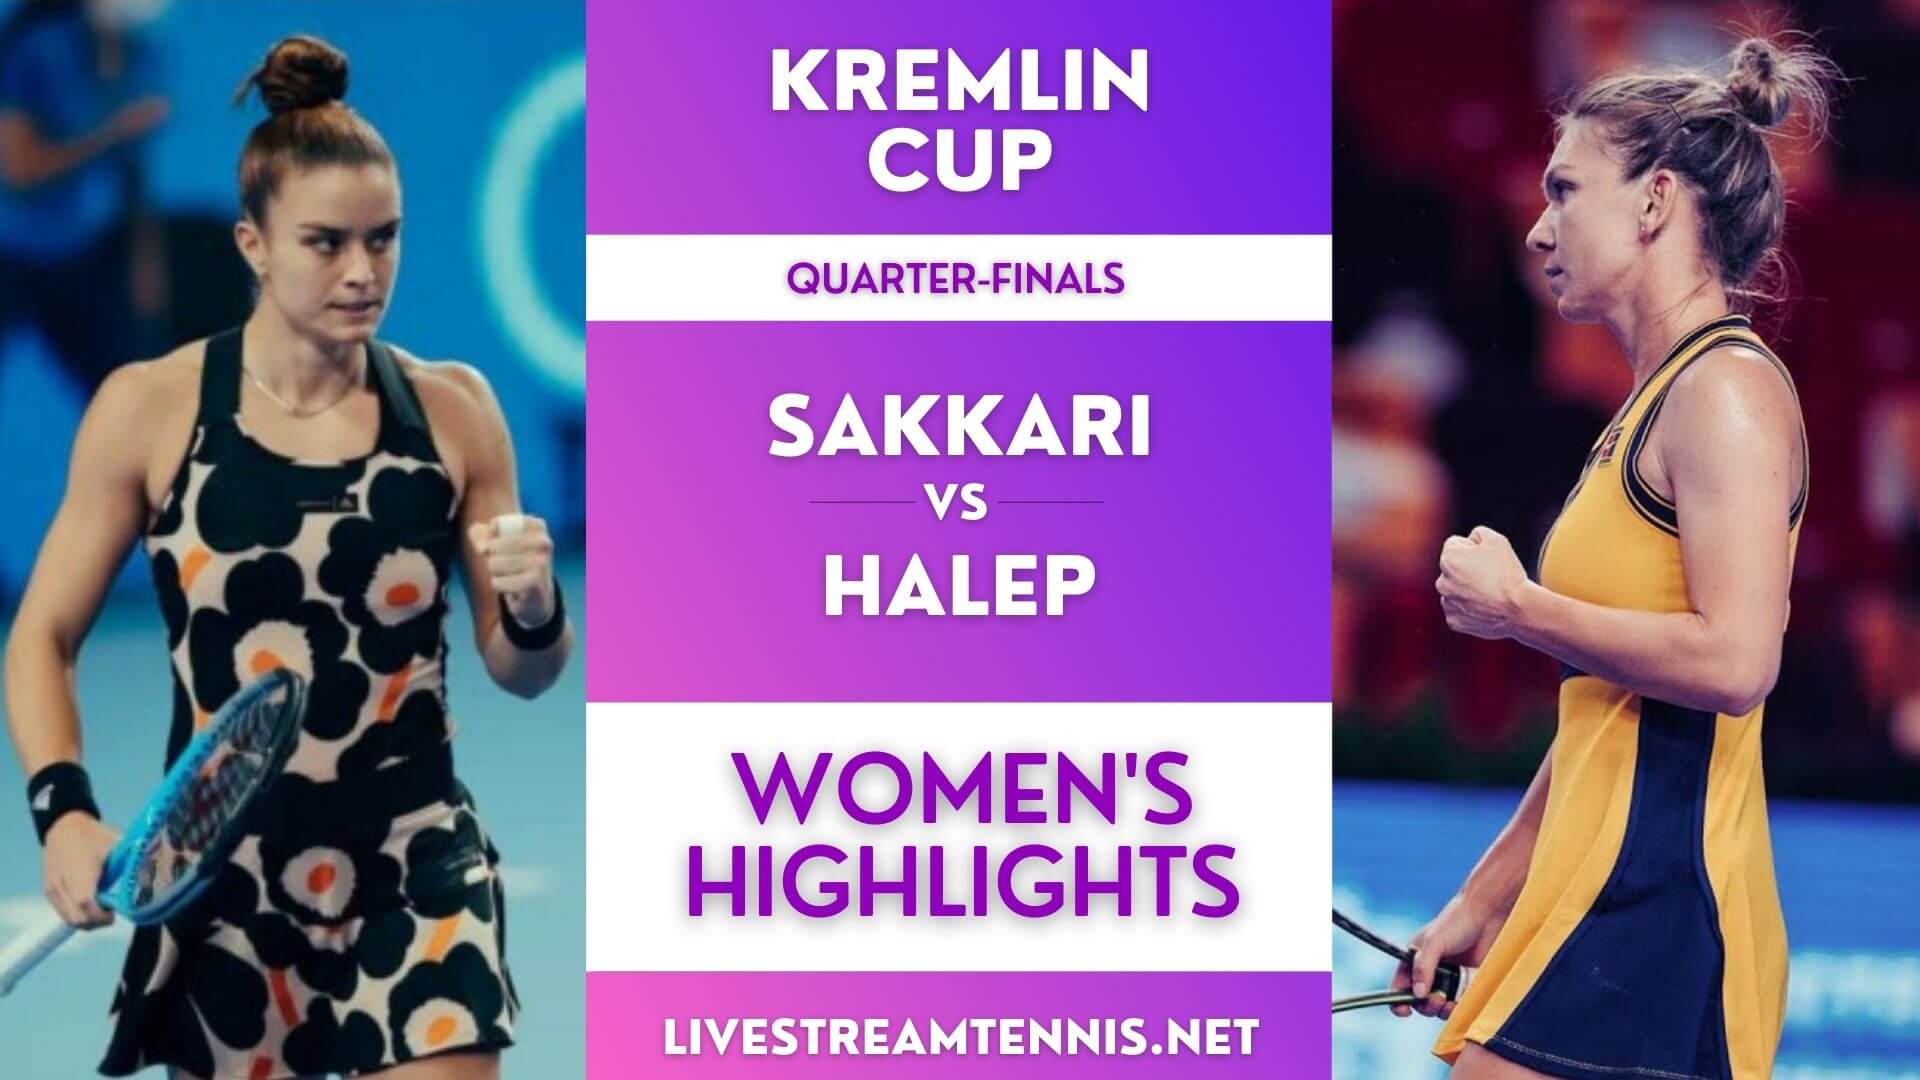 Kremlin Cup Women Quarter Final 1 Highlights 2021